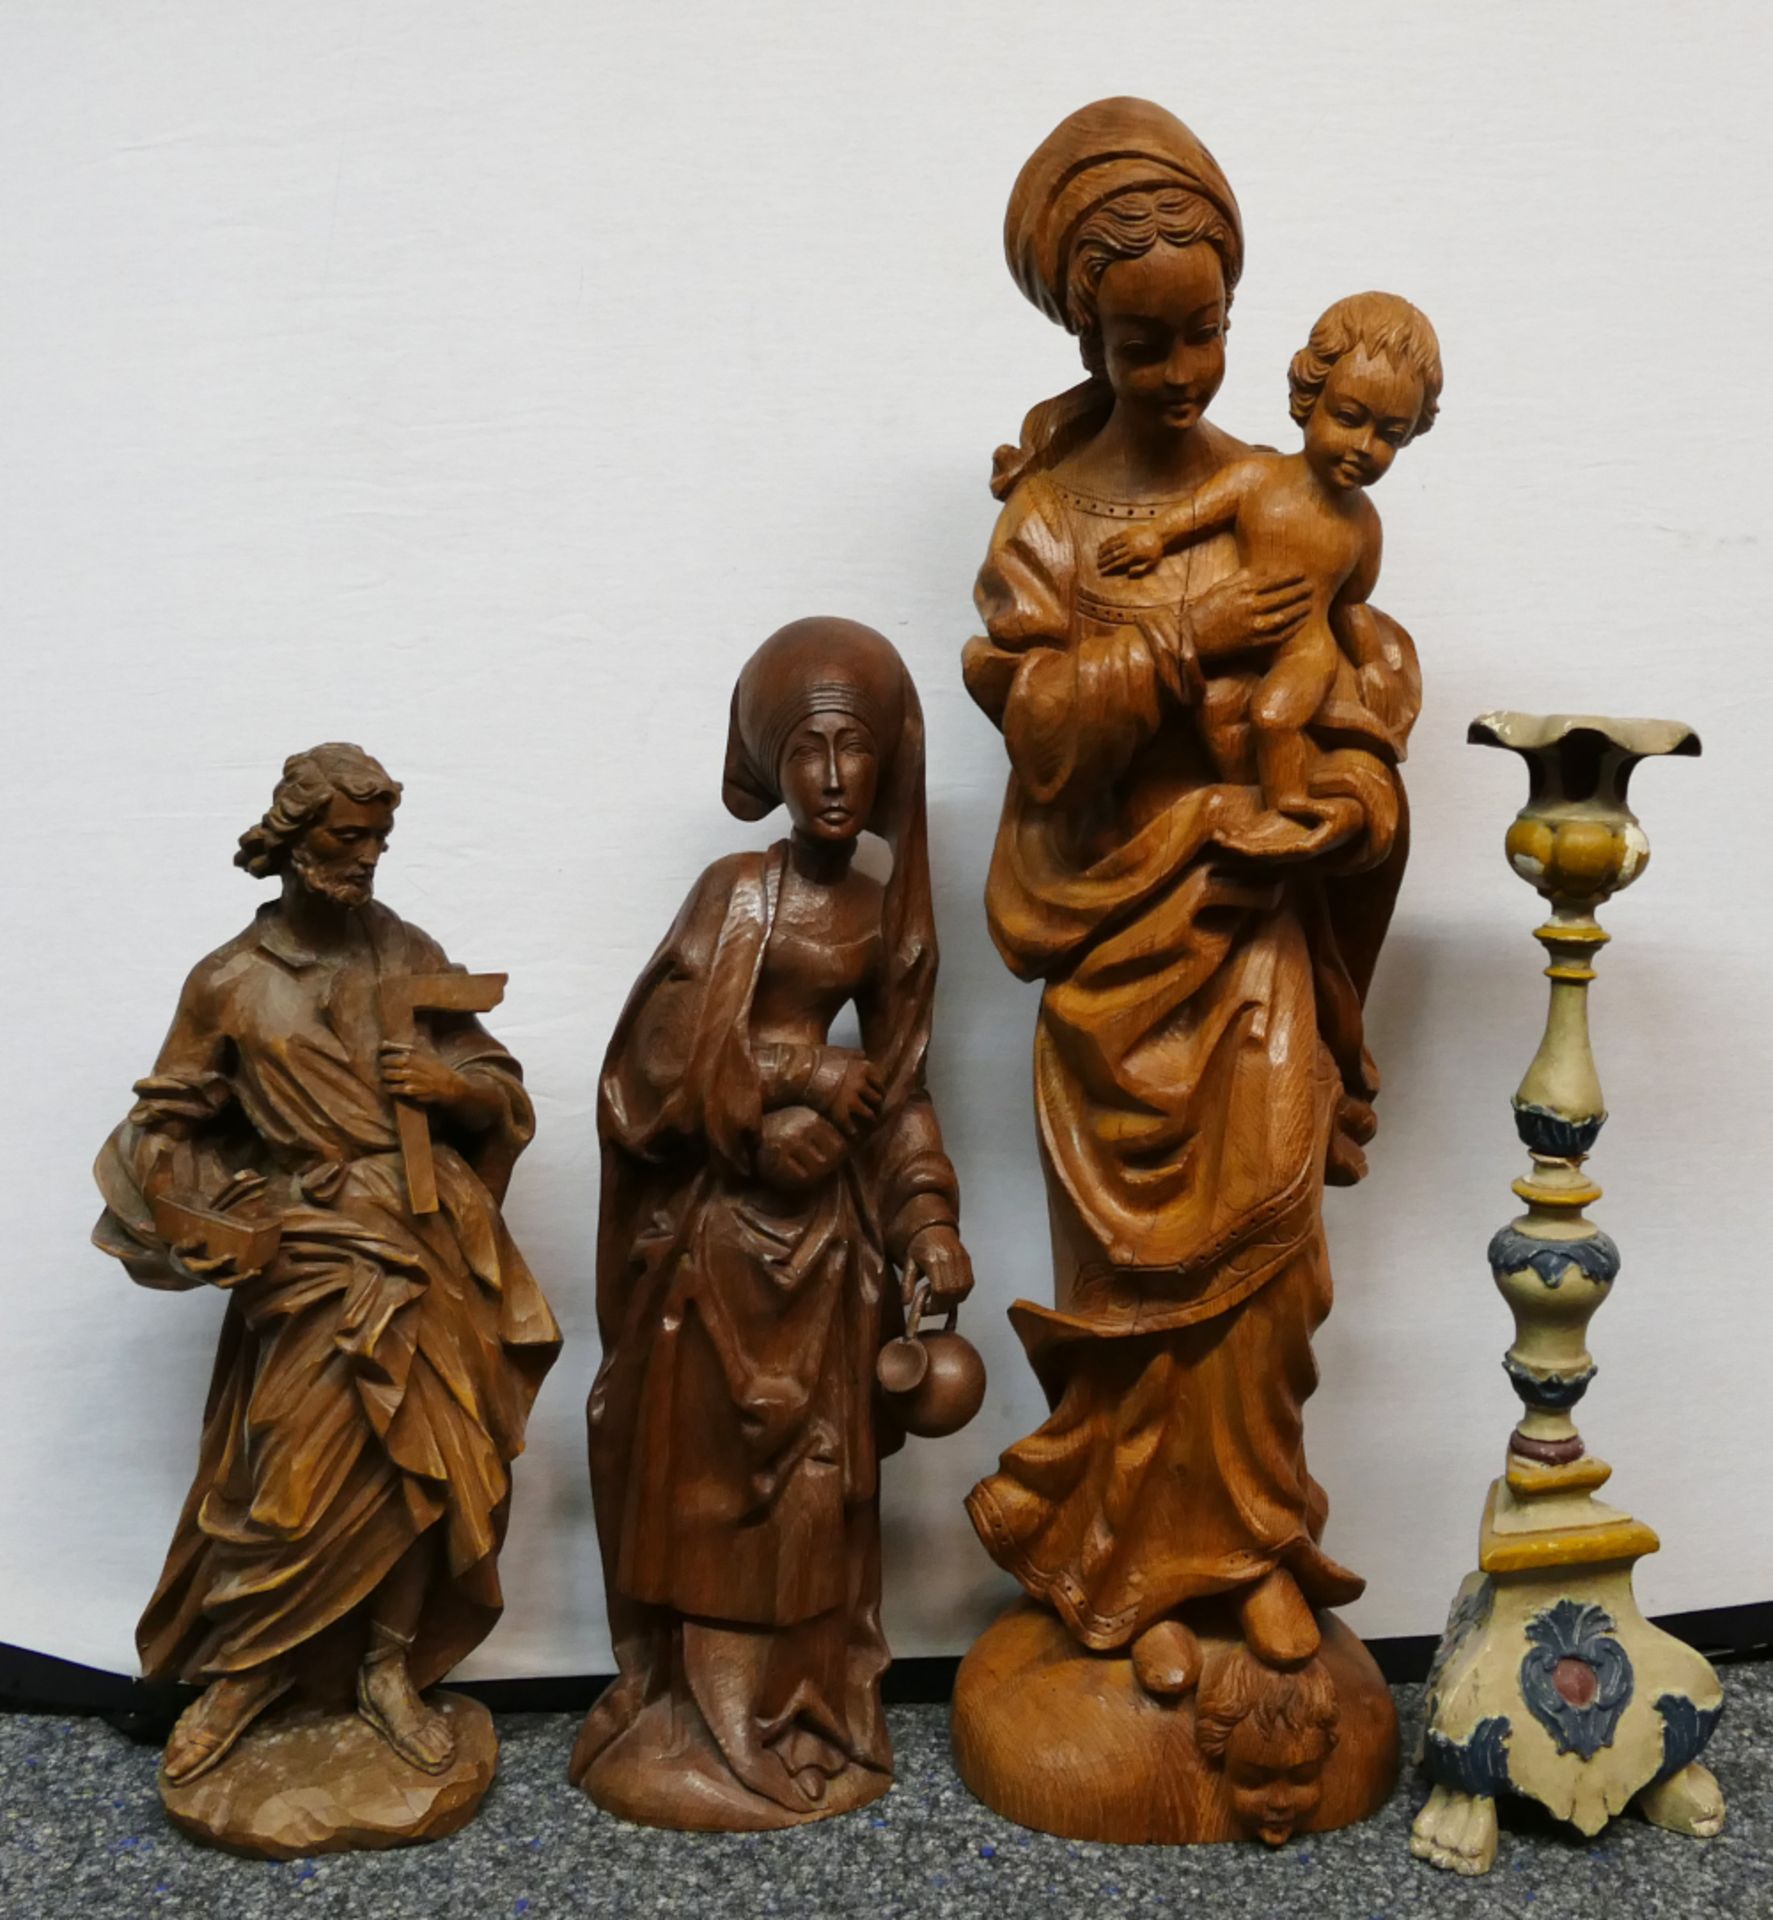 3 Holzfiguren nztl. unbemalt: "Madonna mit Kind" ca. H 93cm, "Elisabeth von Thüringen" ca. H 66cm, "